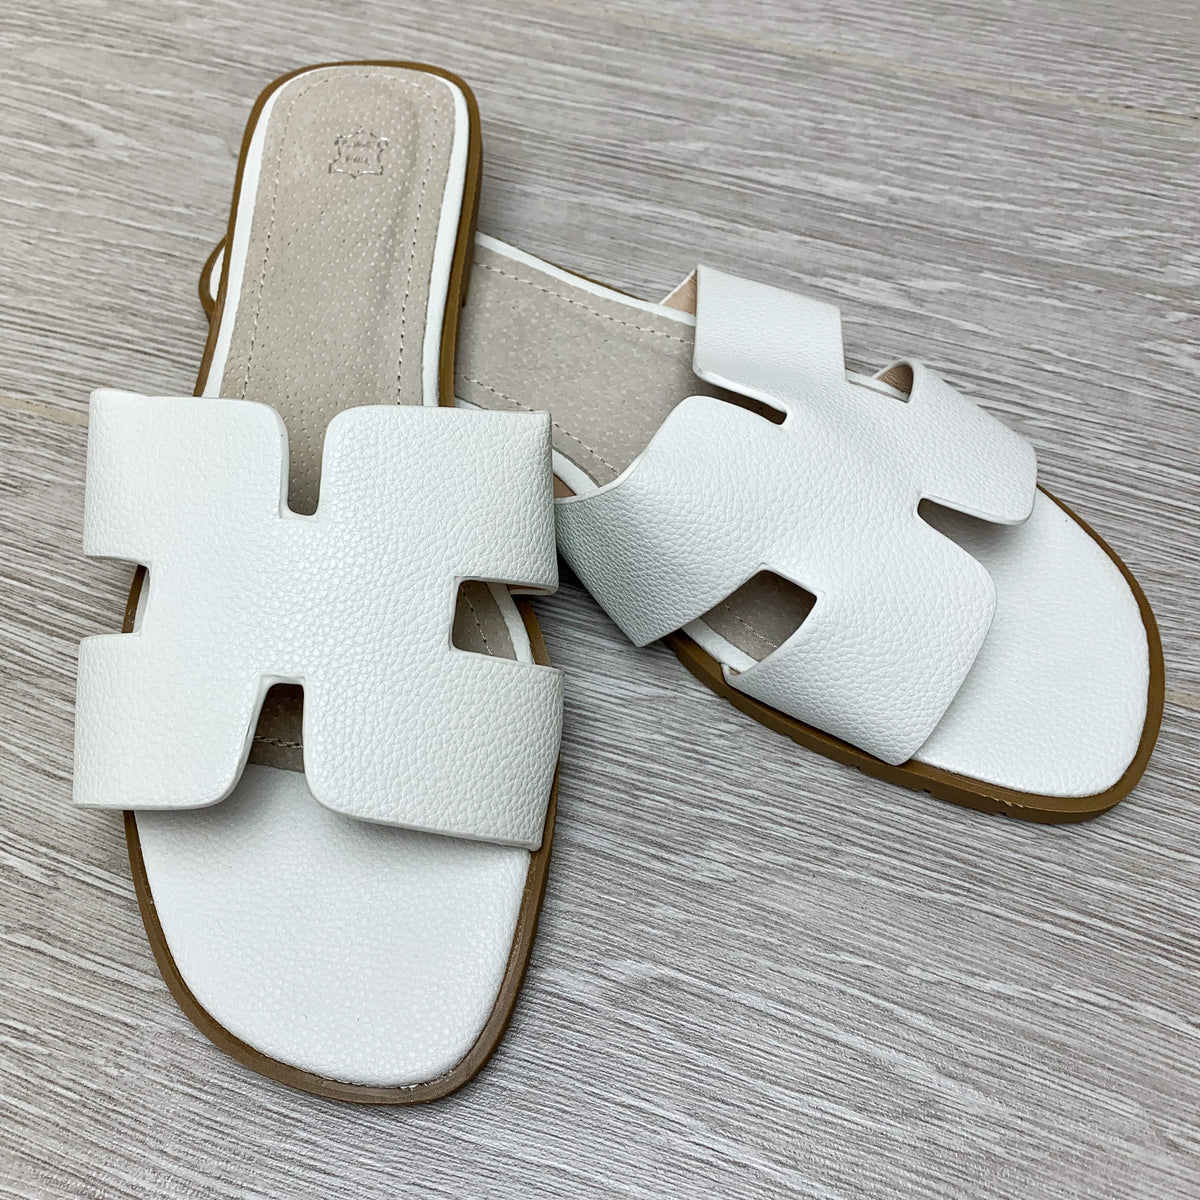 Orlie H Hermes Inspired Sandals - White 